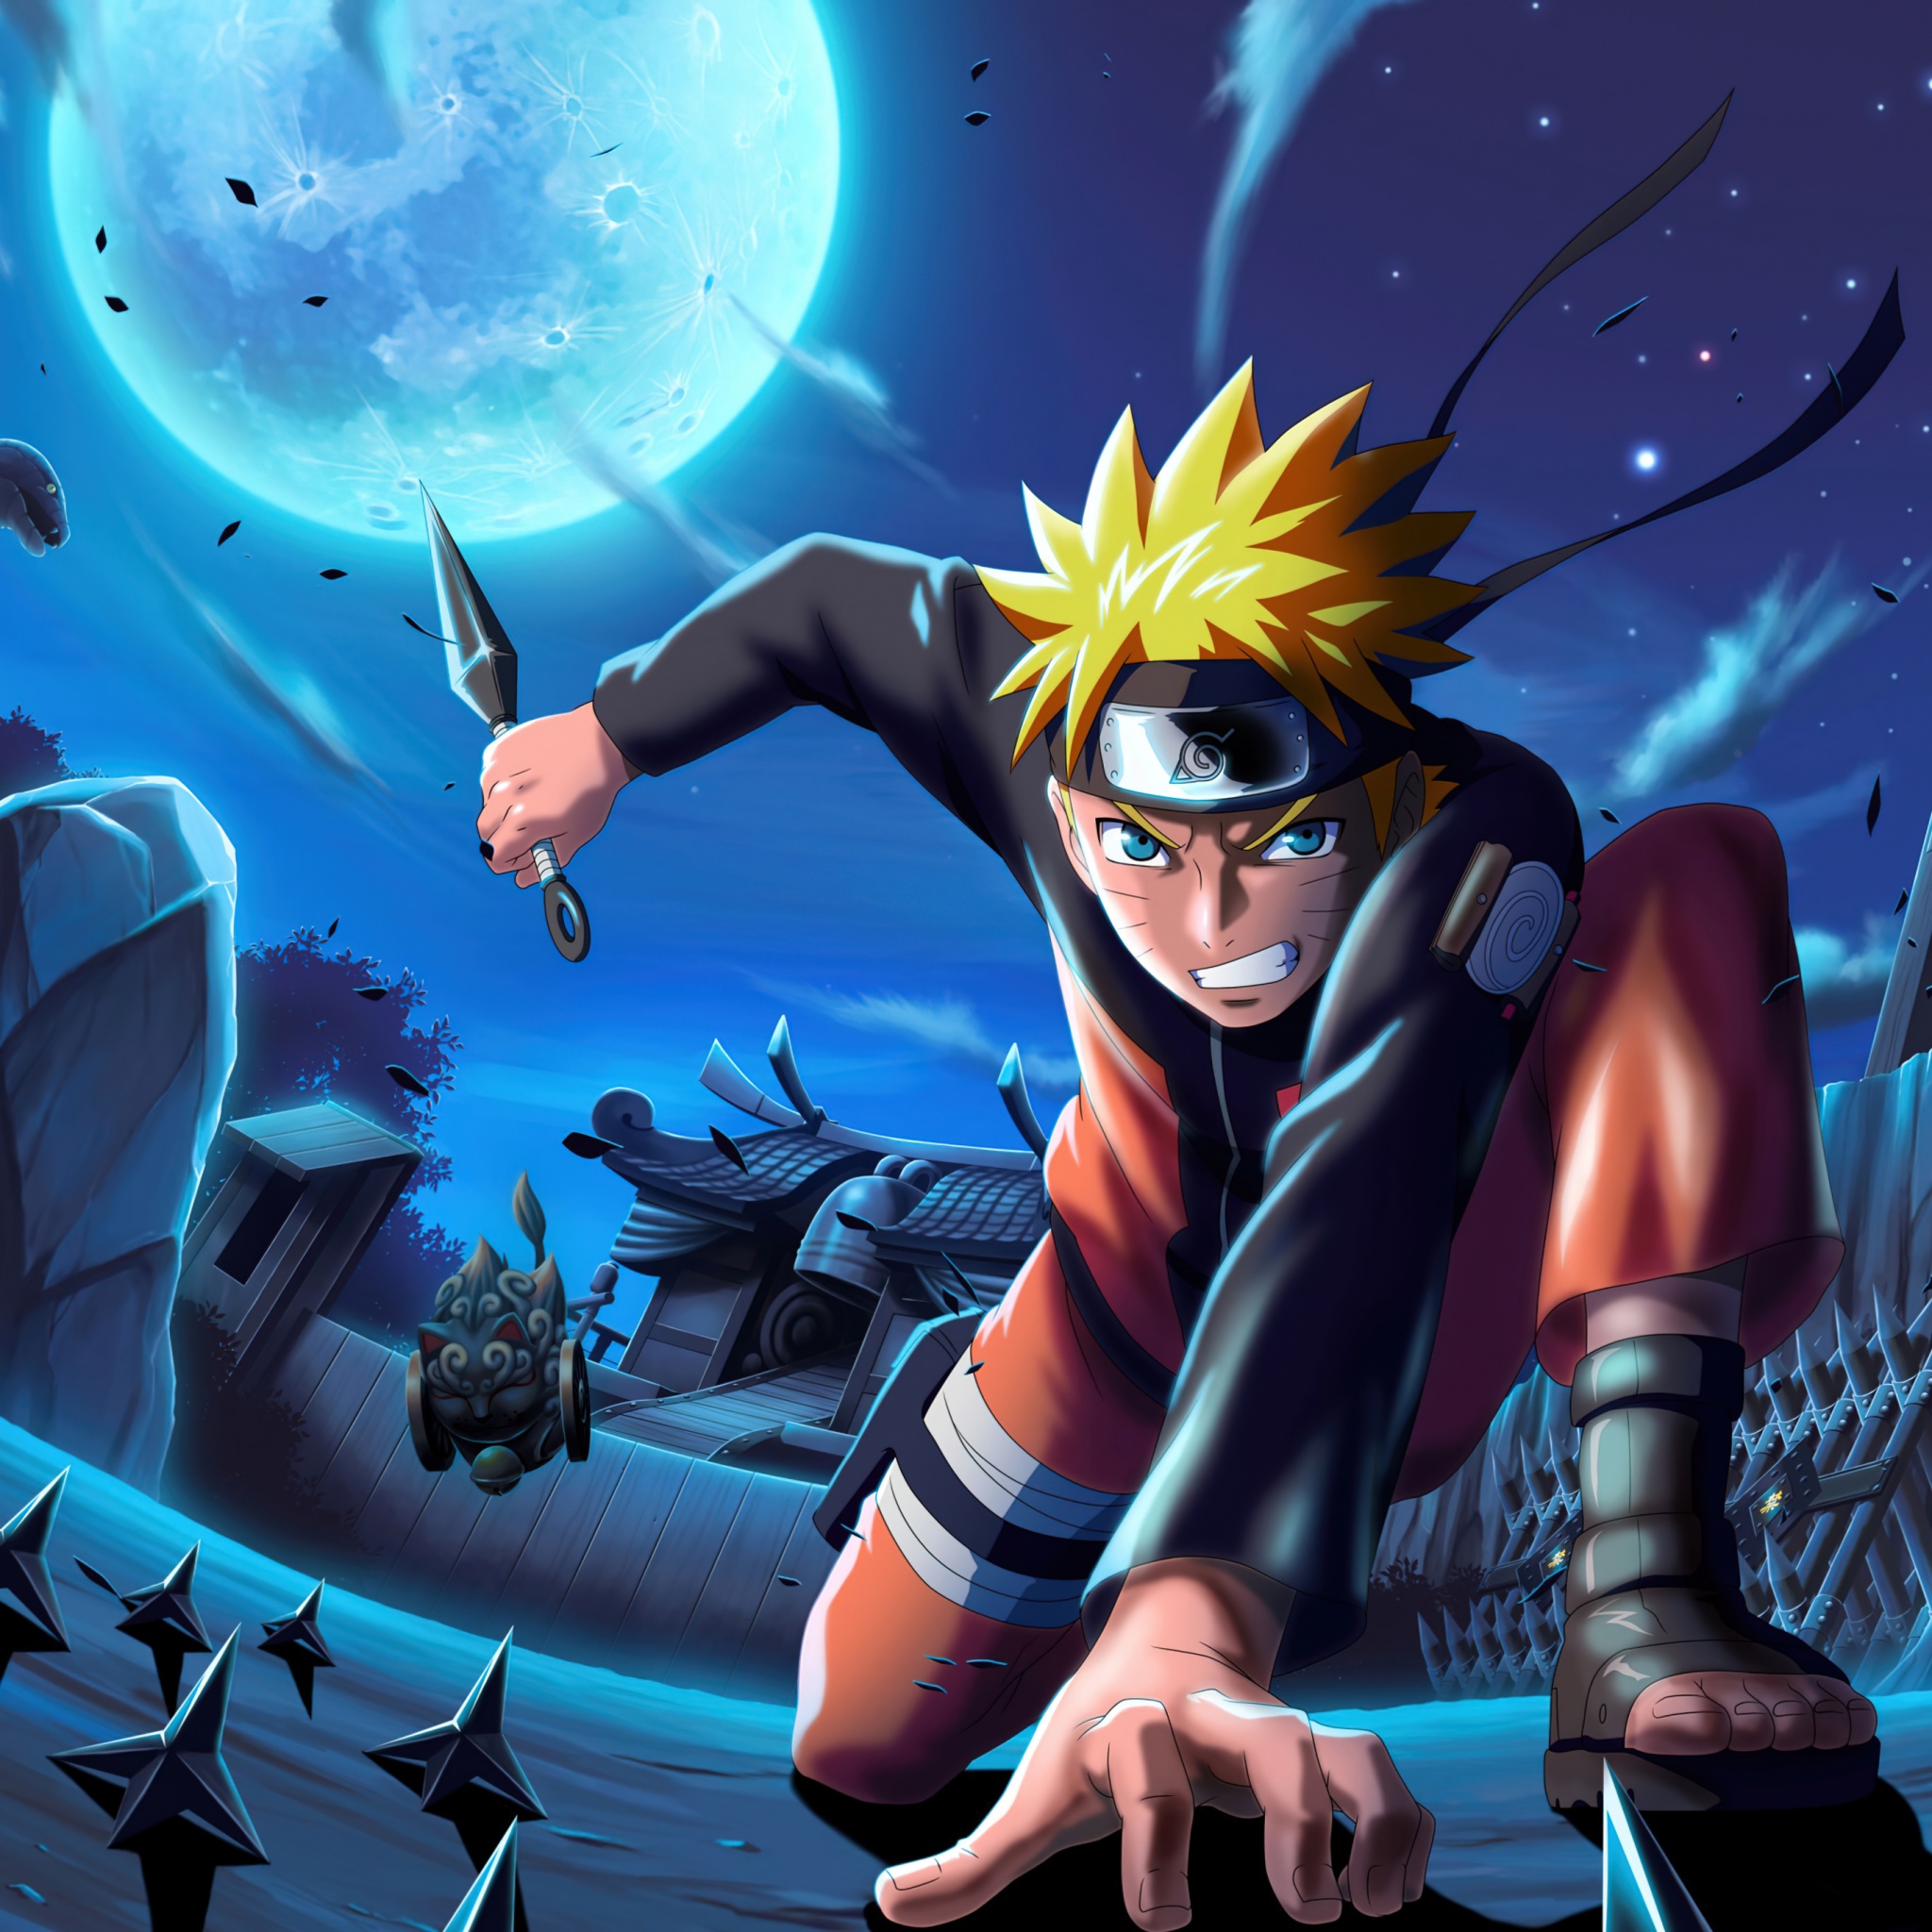 Naruto Uzumaki Wallpaper 4K: Bạn đang tìm kiếm một hình nền đẹp và chất lượng cao về Naruto Uzumaki? Hãy đến và thưởng thức những hình ảnh độ phân giải 4K đầy sống động và sắc nét nhất, giúp bạn cùng Naruto trải nghiệm những thử thách khó khăn nhất!